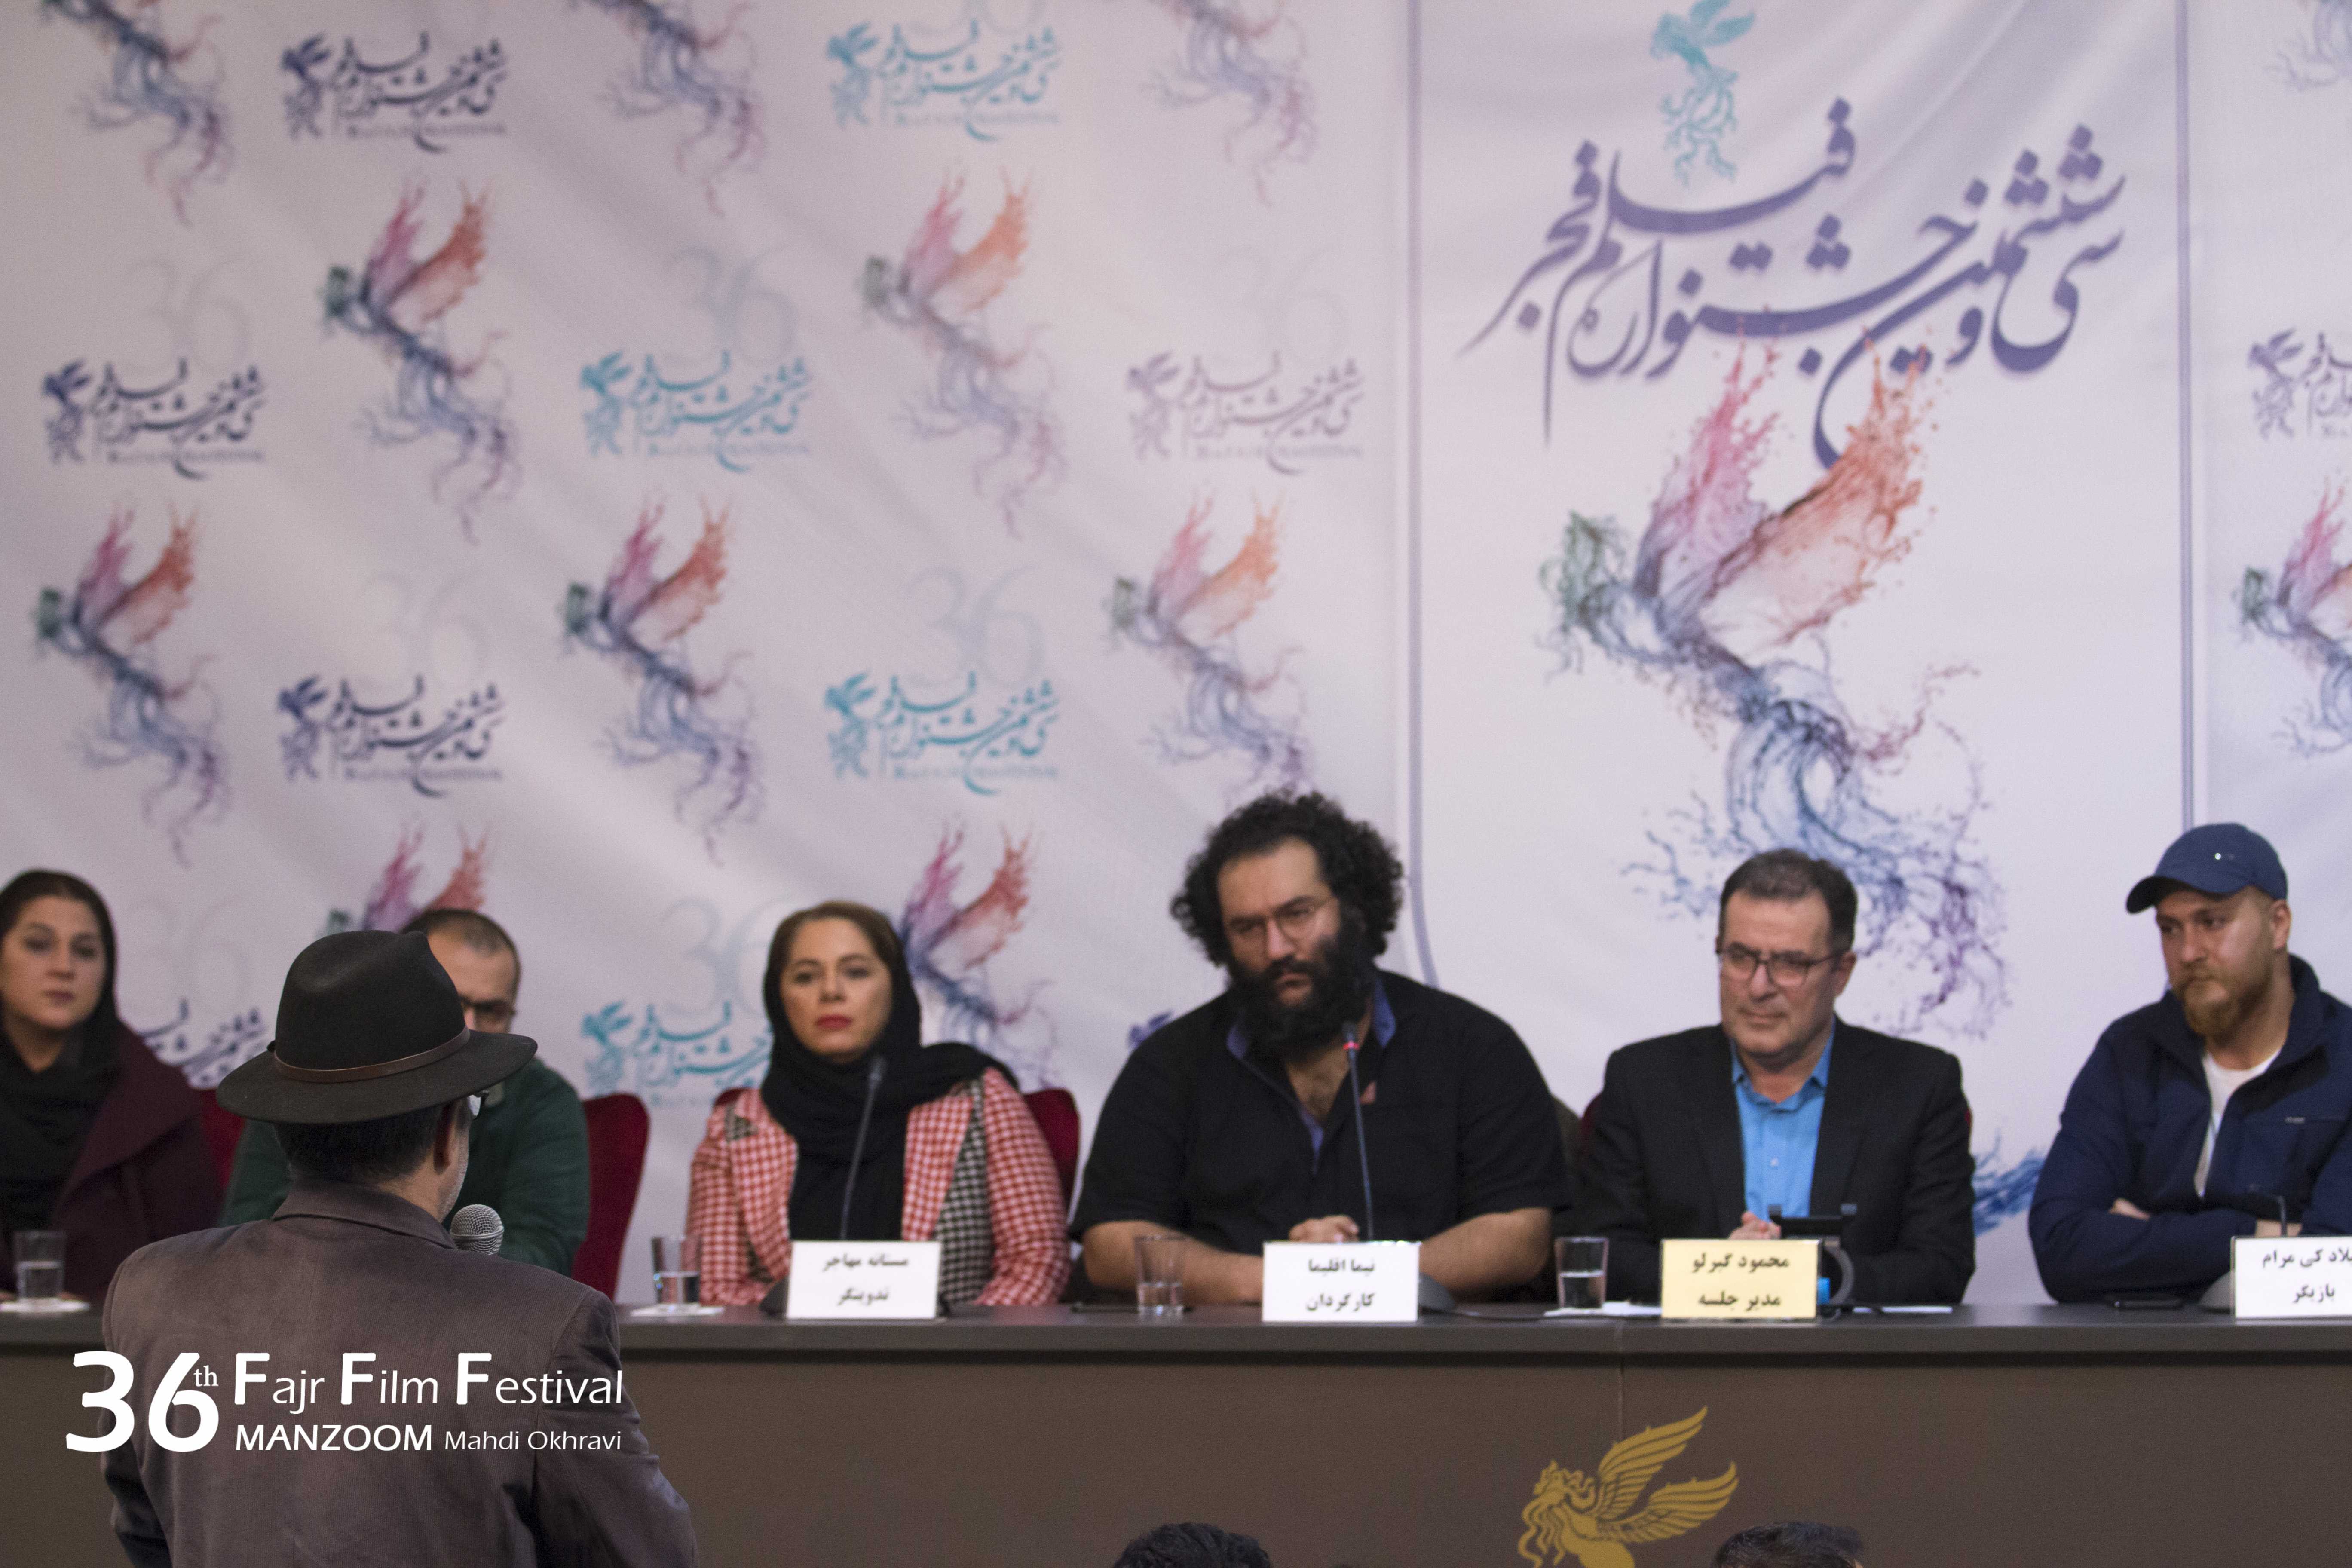 میلاد کی‌مرام در نشست خبری فیلم سینمایی امیر به همراه مستانه مهاجر، نیما اقلیما و محمود گبرلو